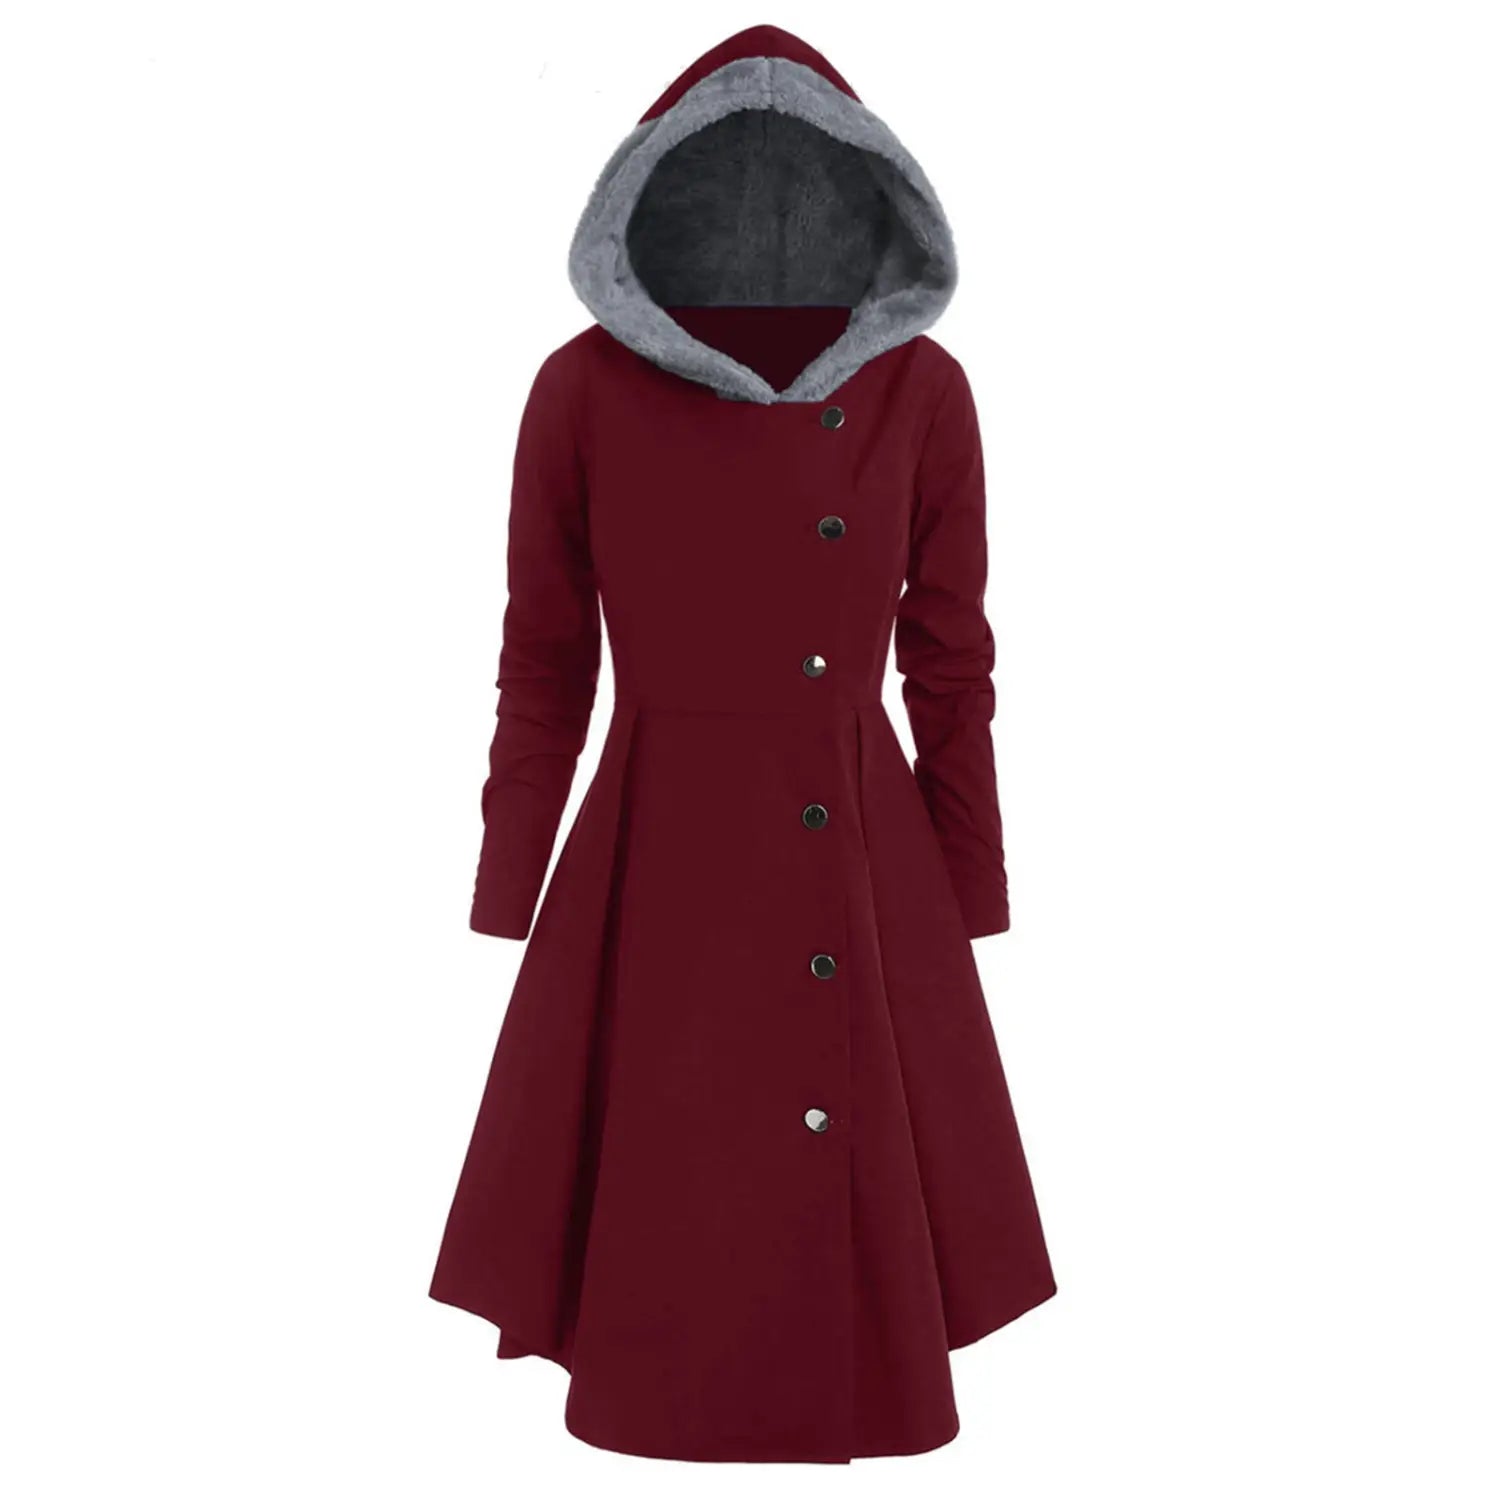 Lovemi - Bombshell Christmas Trench Women’s Long Hooded Coat